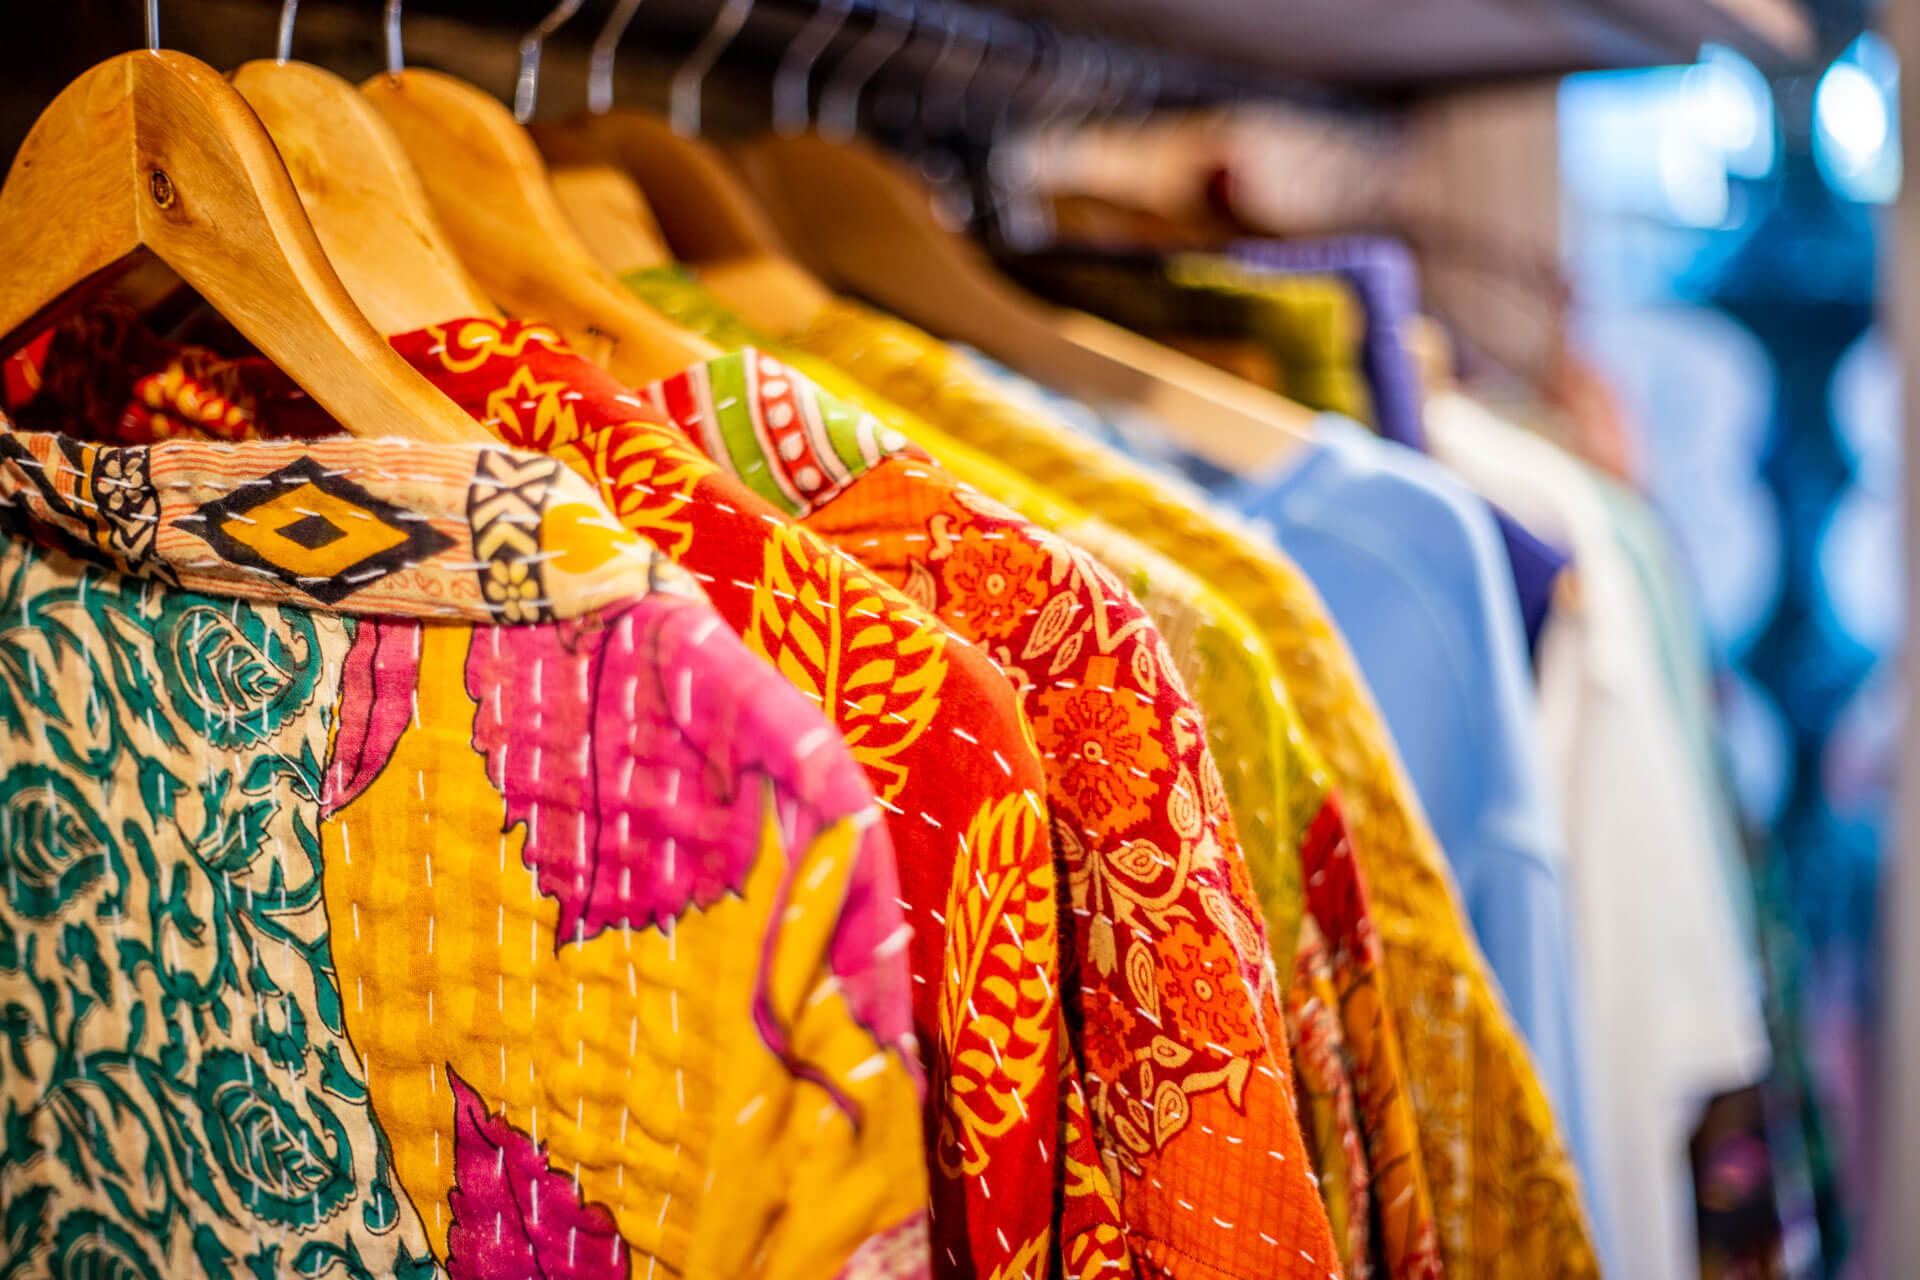 Melocoton boutique vêtements sur cintres aux couleurs chaudes d'été